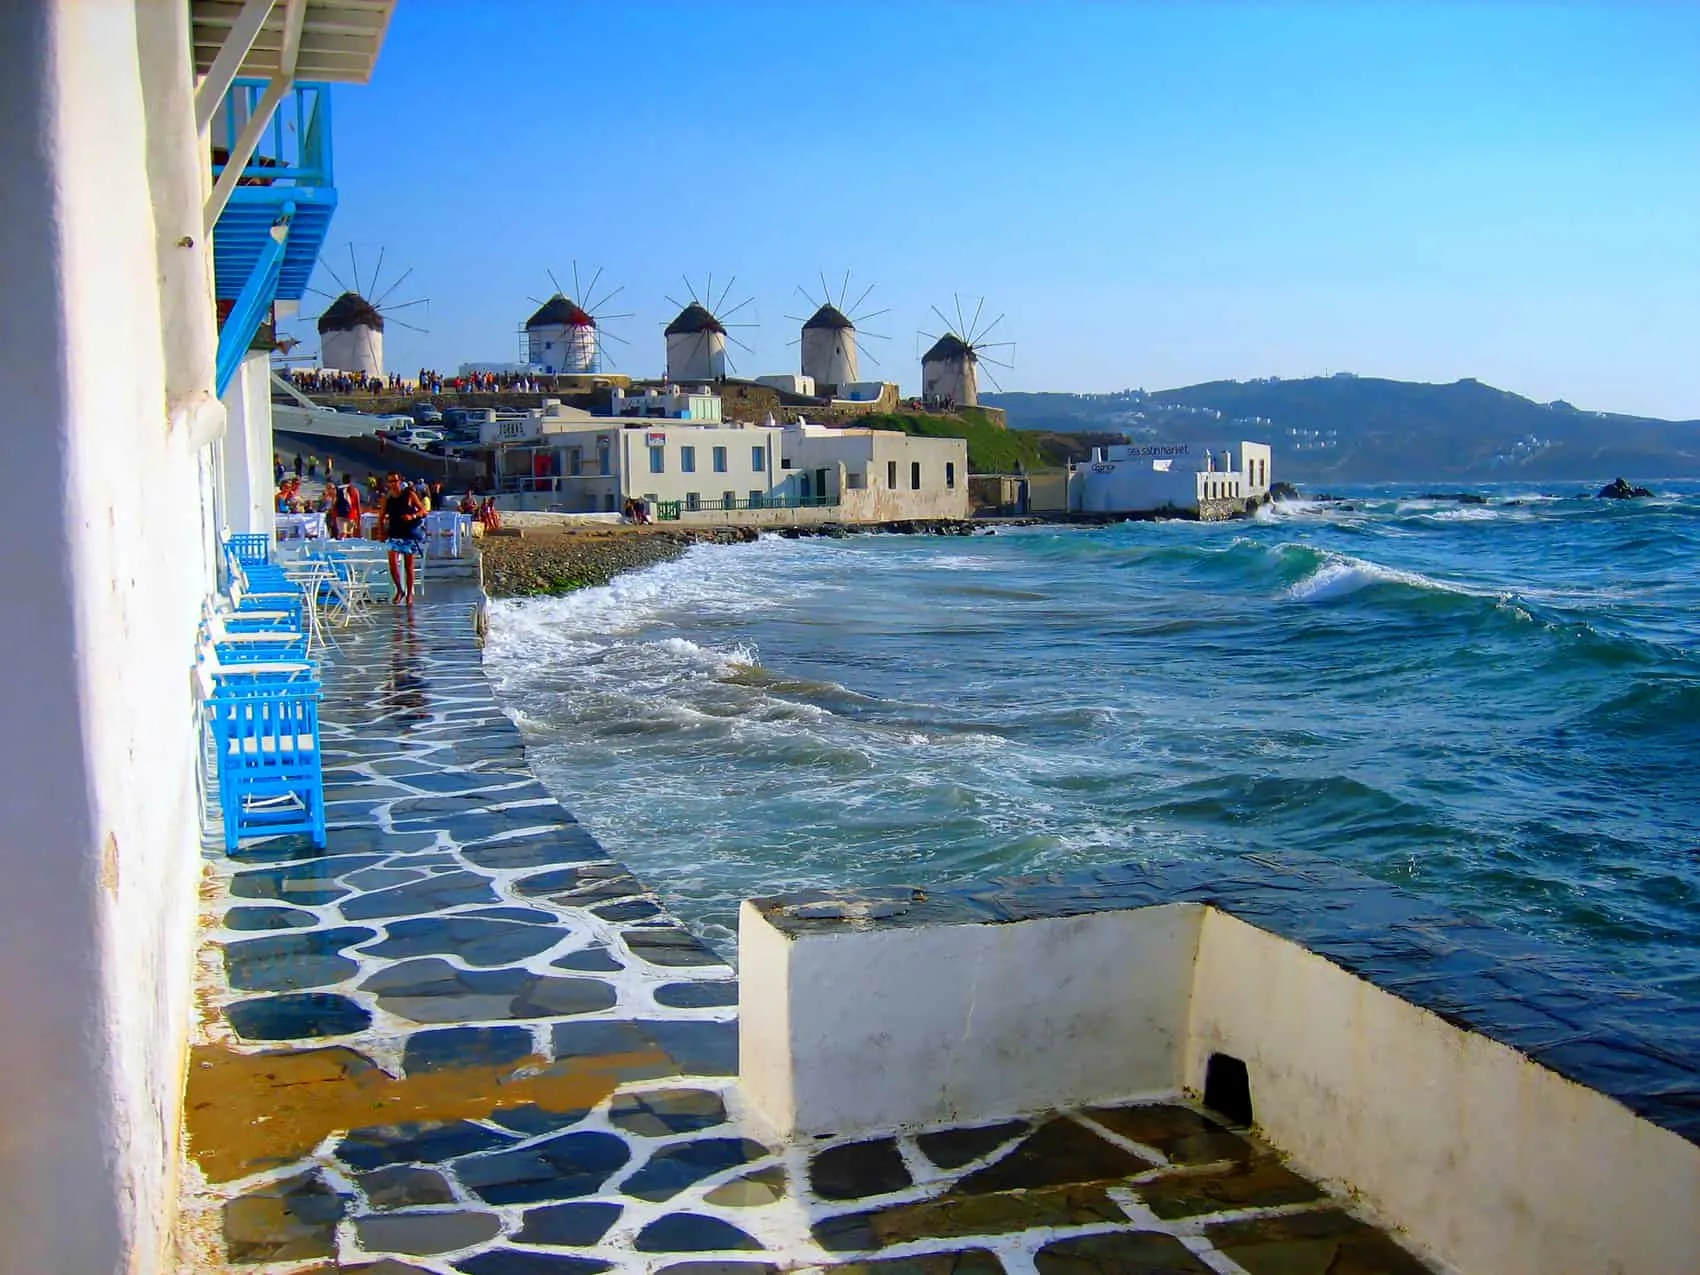 Græske øer. Vindmøllerne på Mykonos, Kykladerne, rejser til Grækenland